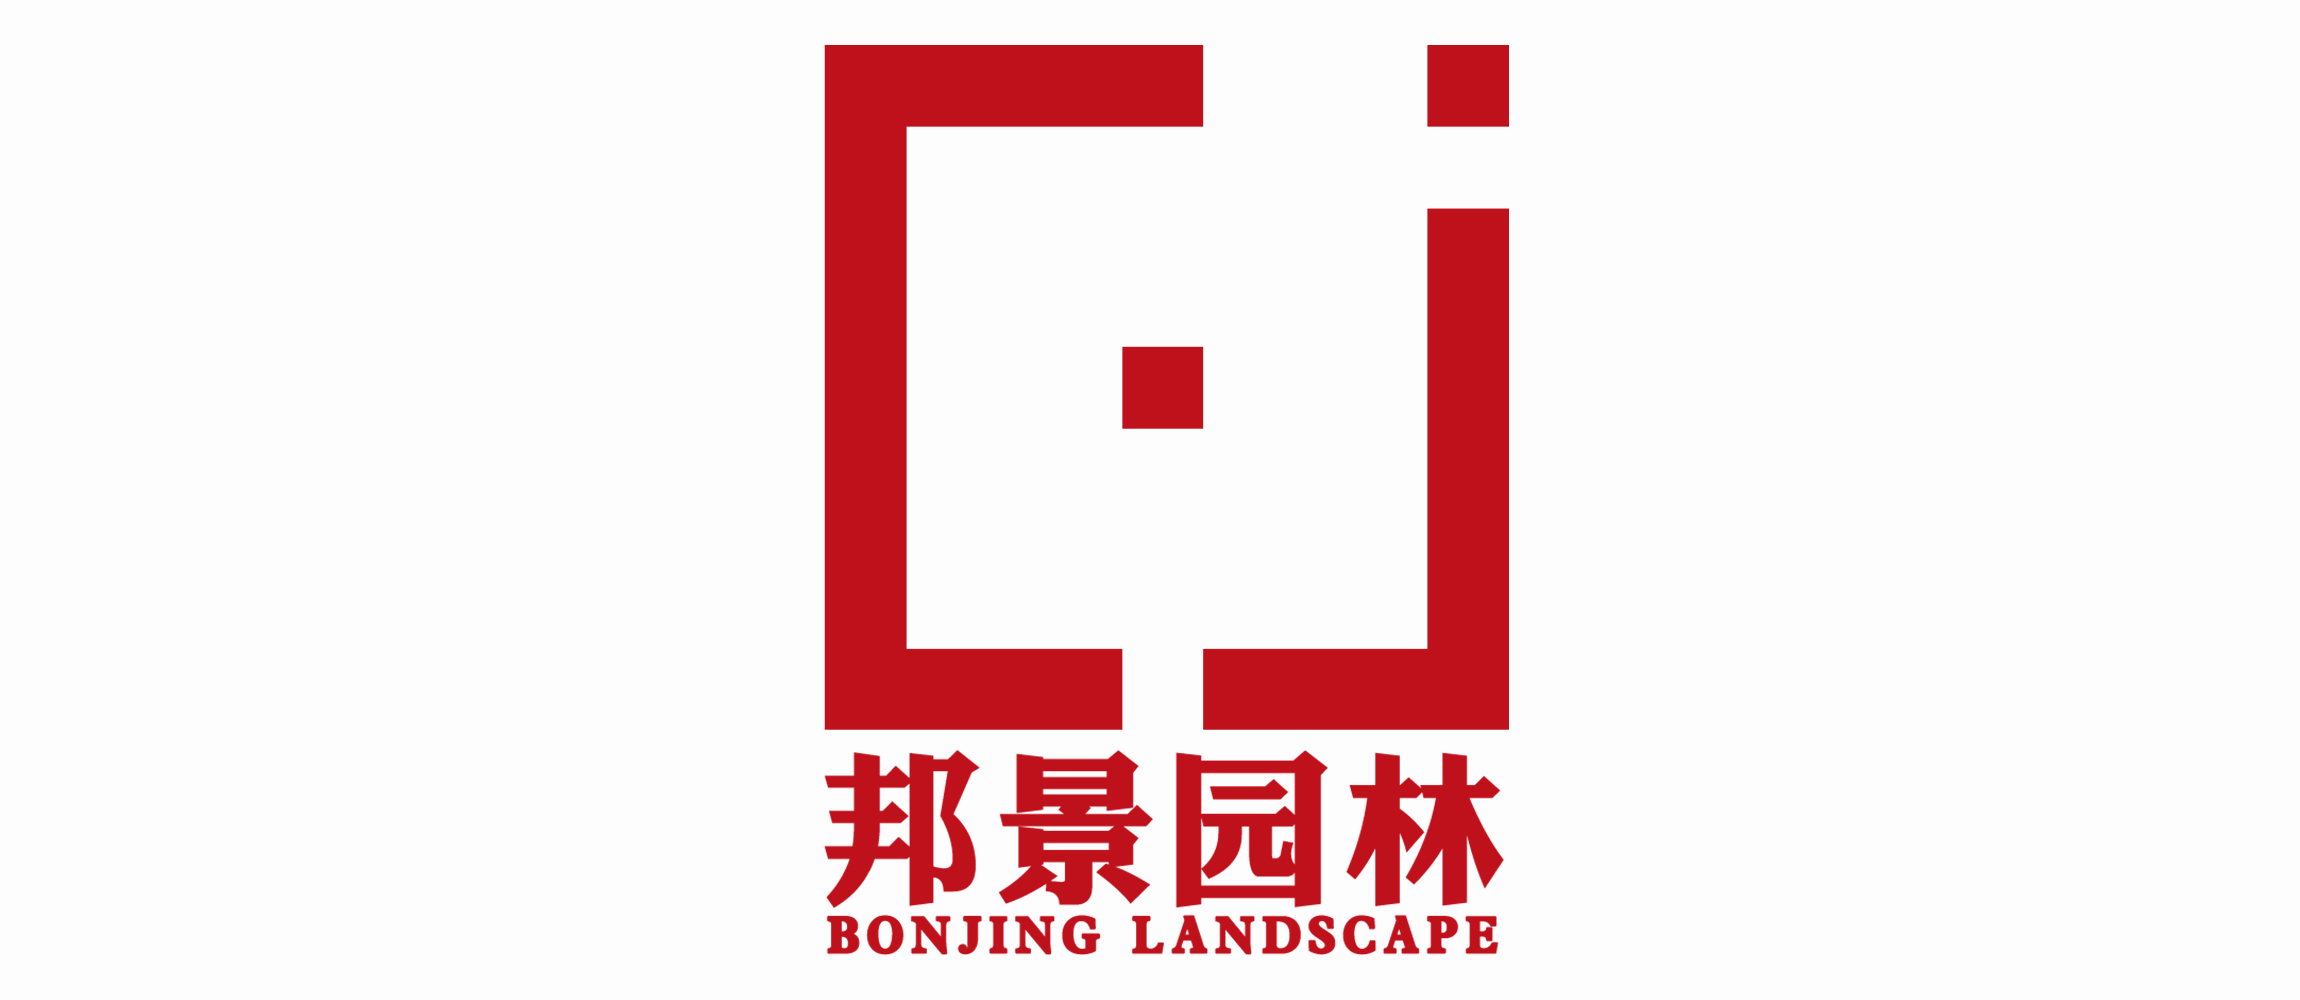 广州邦景园林绿化设计有限公司